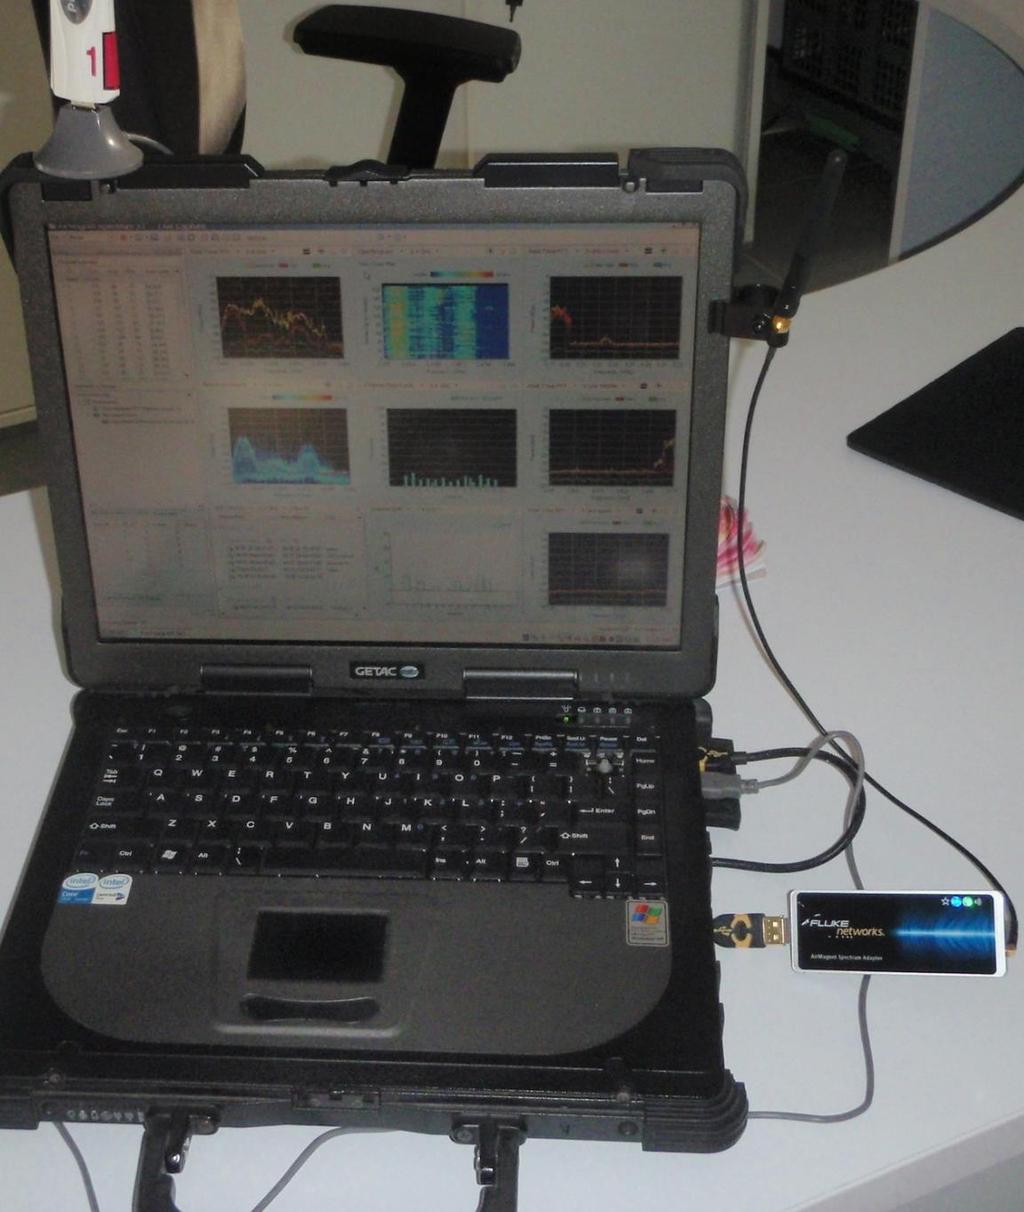 EQUICOM mérőműszerek felhasználási tapasztalatai Spectrum XP szoftver és Air Magnet Spectrum Adapter Jól használható a Spectrum XP szoftver és az Air Magnet Spectrum Adapter kiegészítve a Proxim 802.